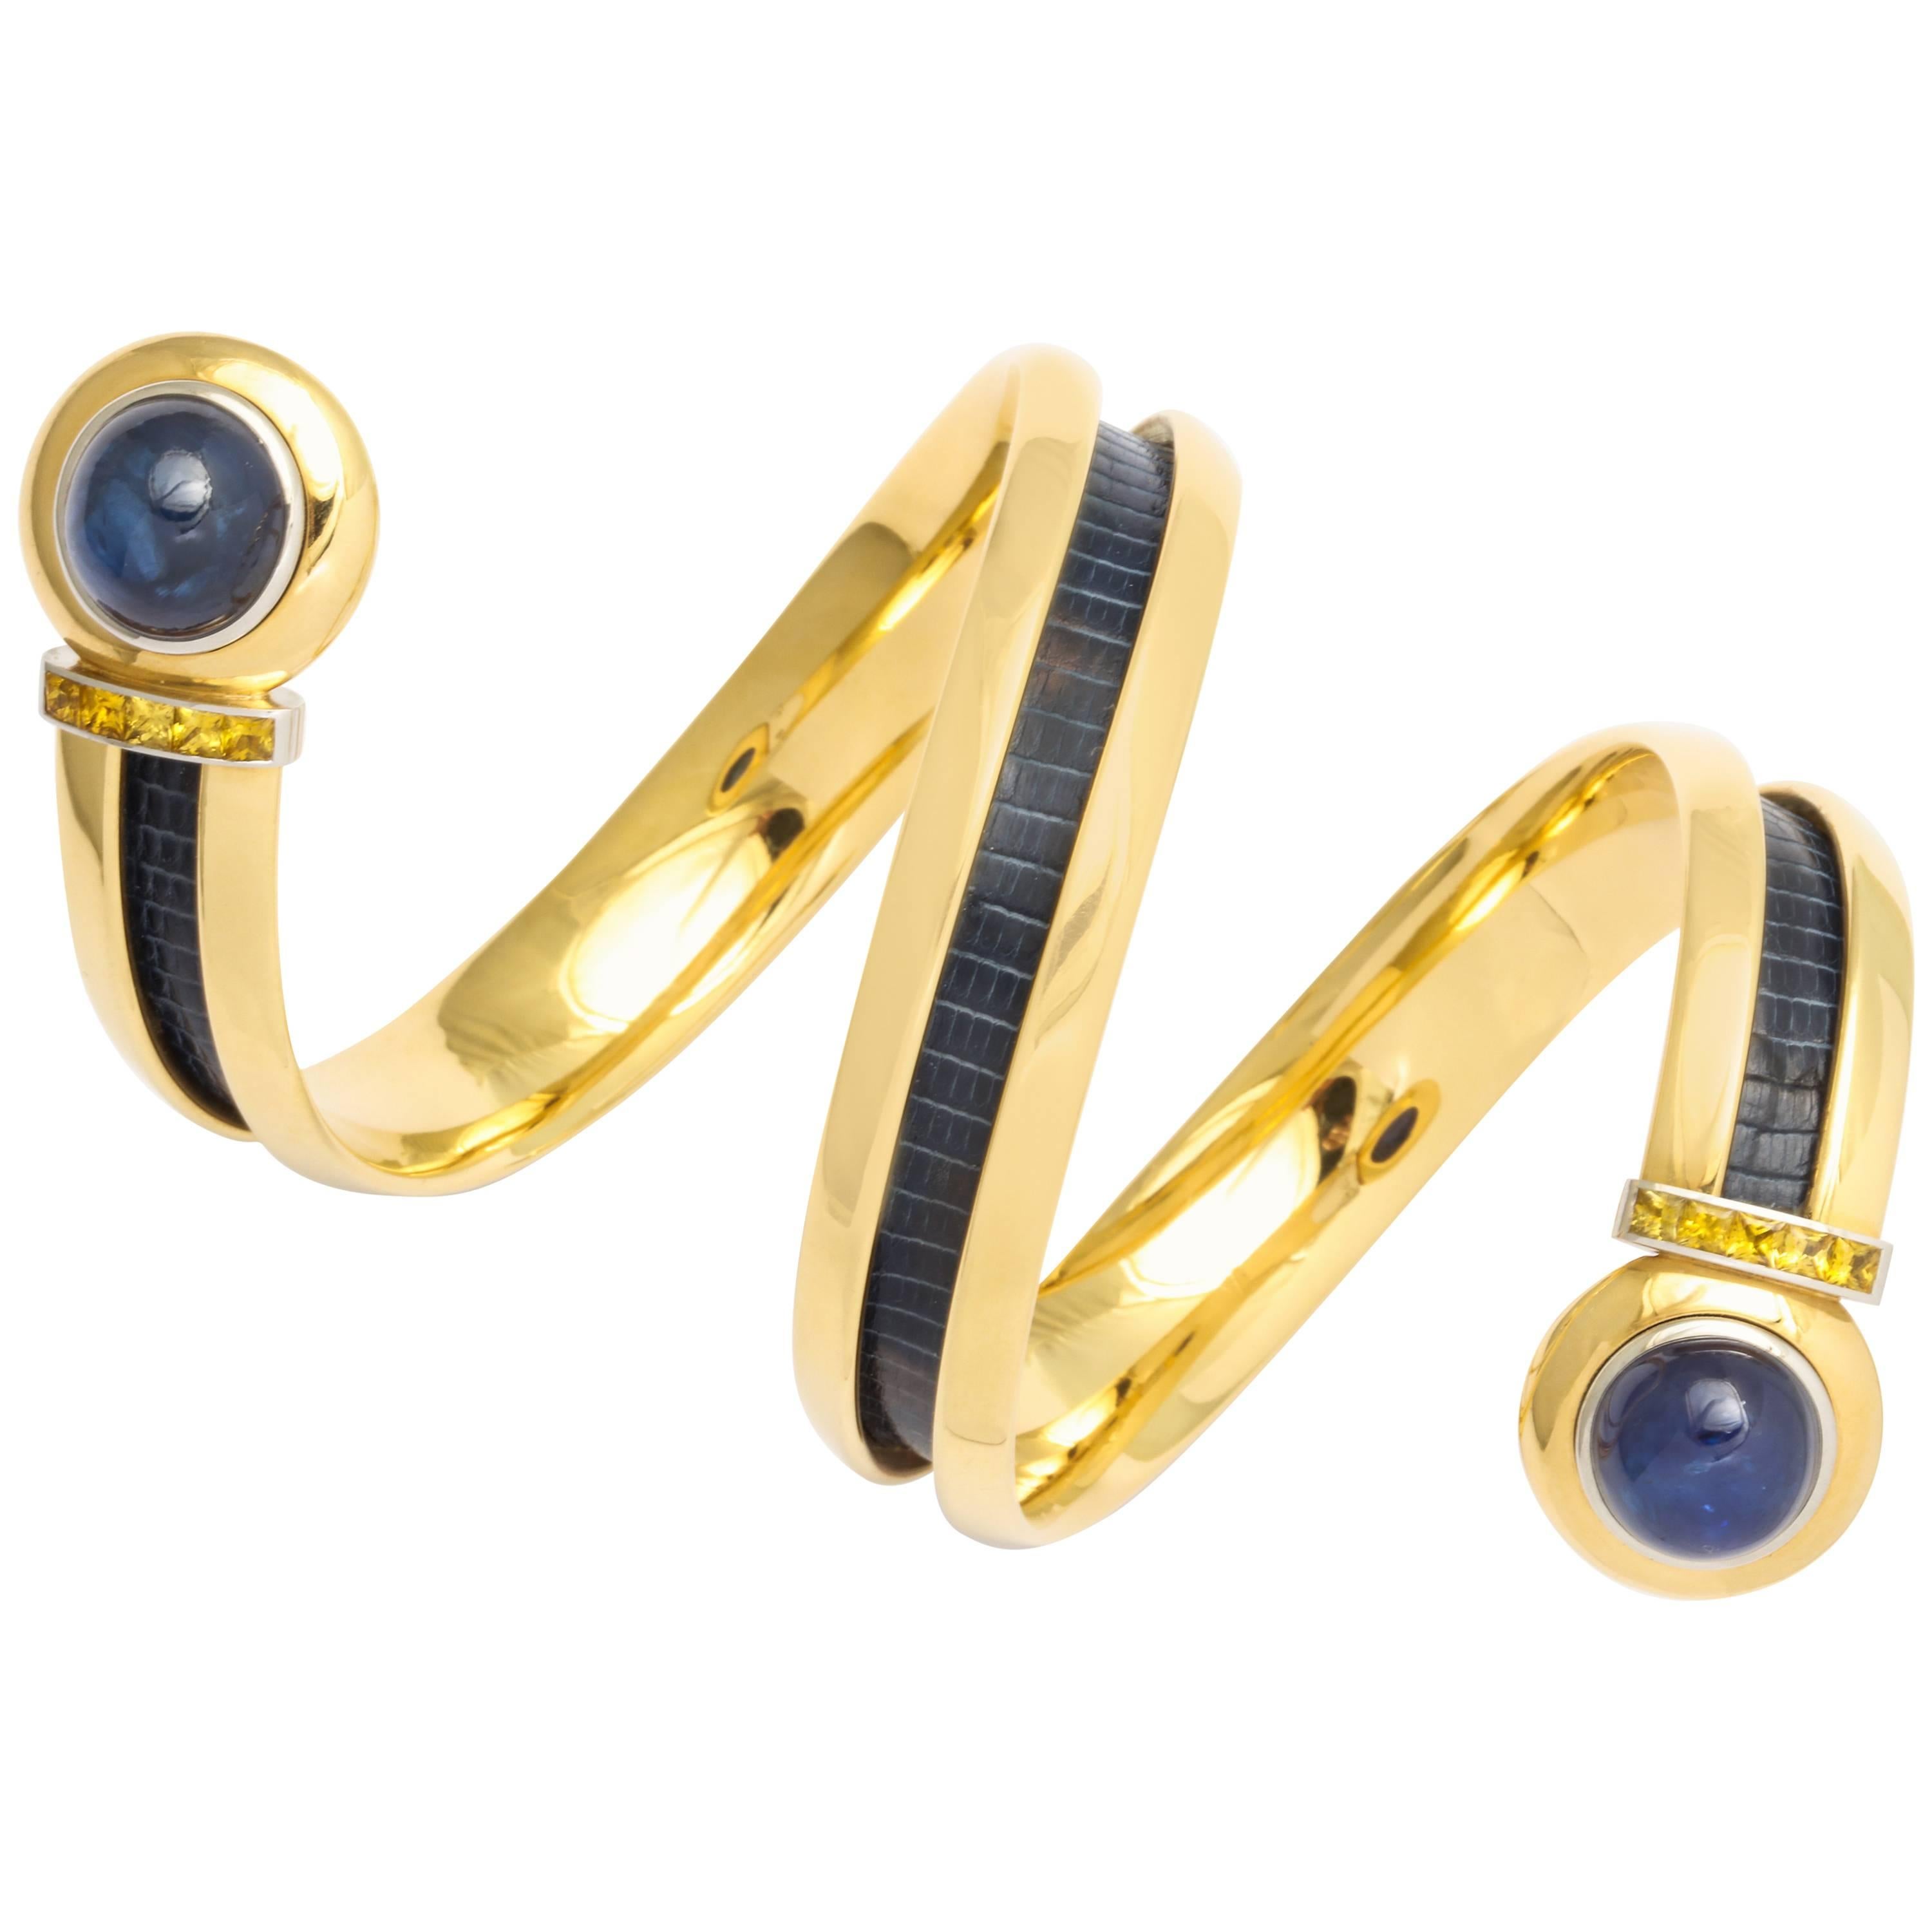 Hemmerle Sapphire Gold Bangle Bracelet